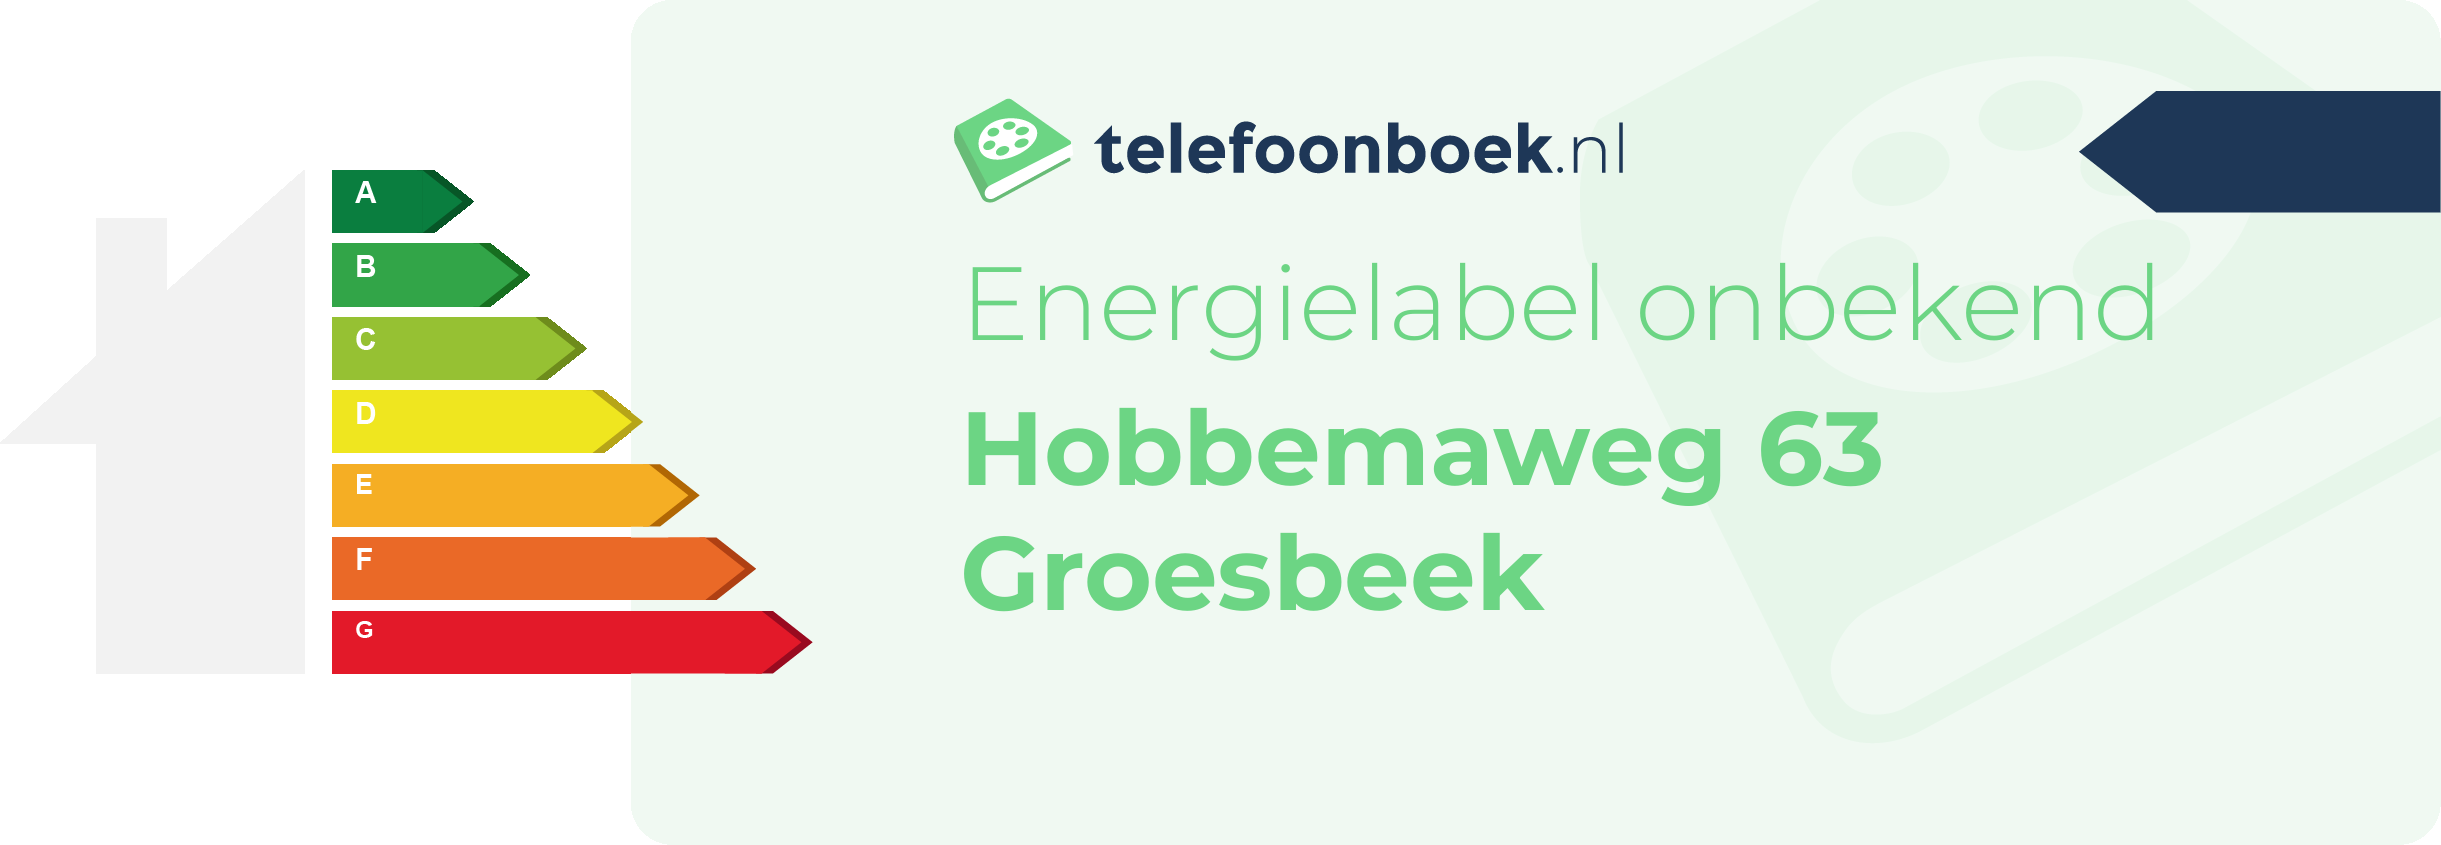 Energielabel Hobbemaweg 63 Groesbeek